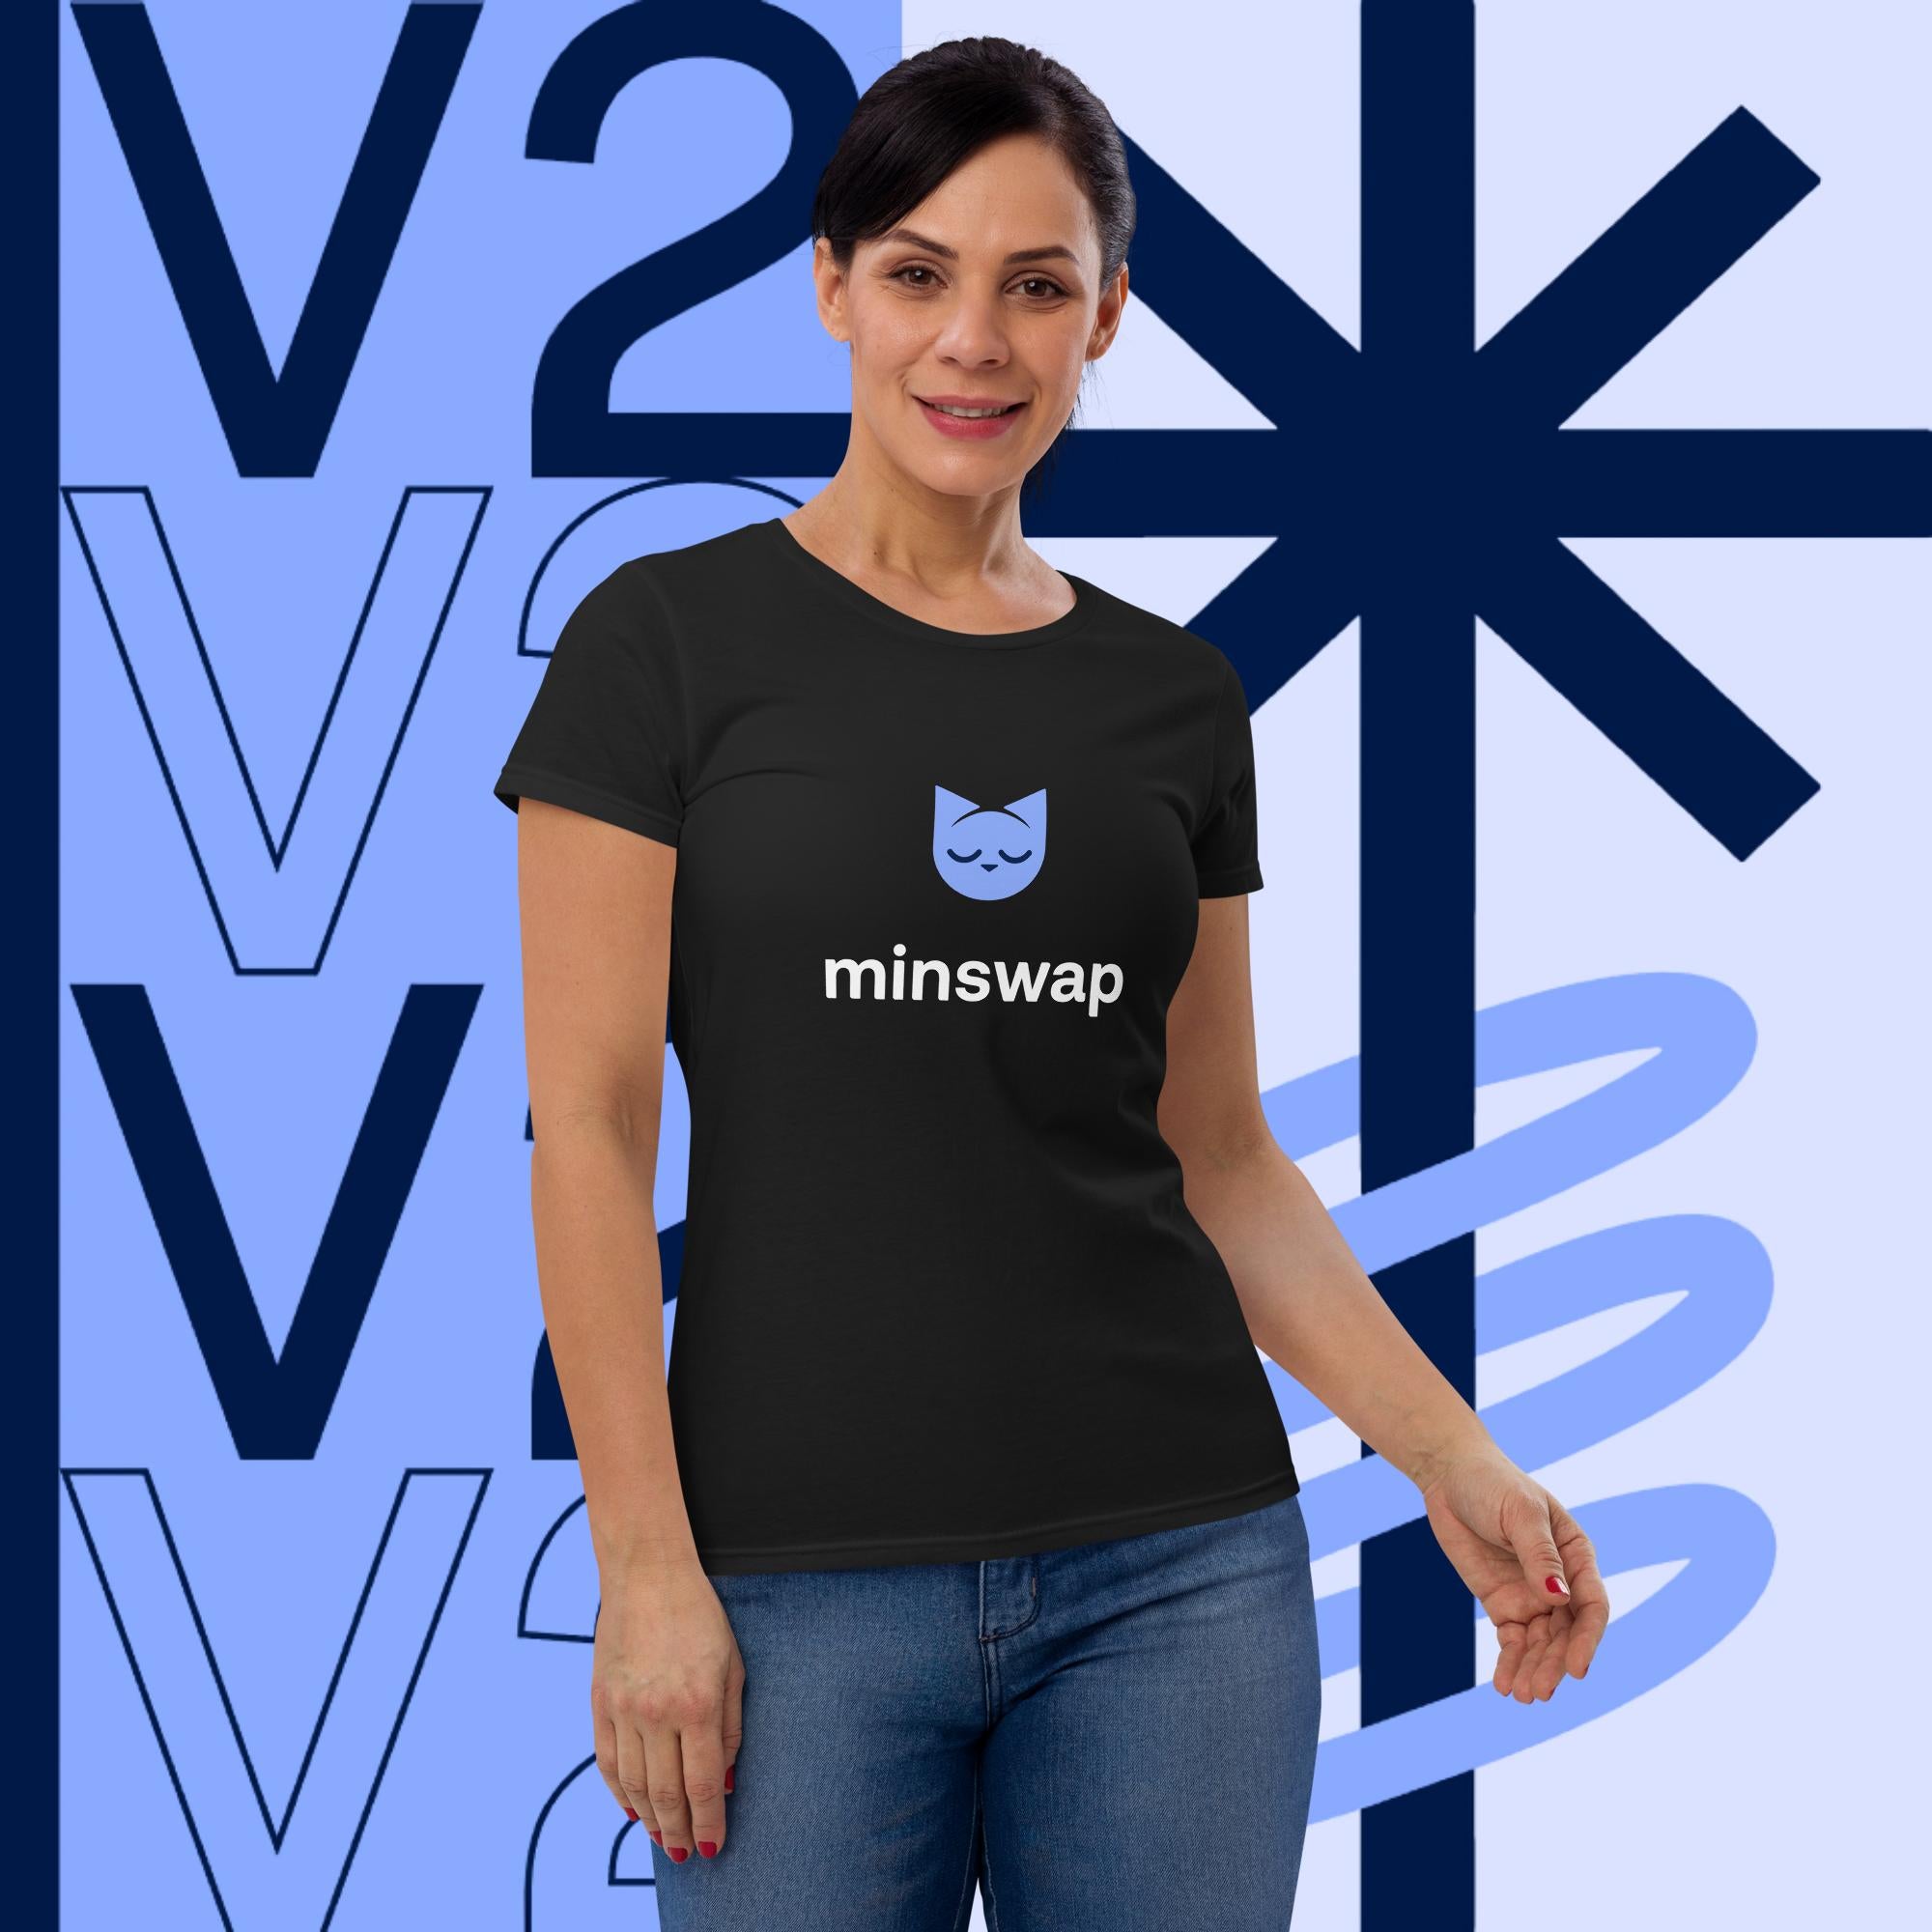 Minswap V2 Logo Women's short sleeve t-shirt